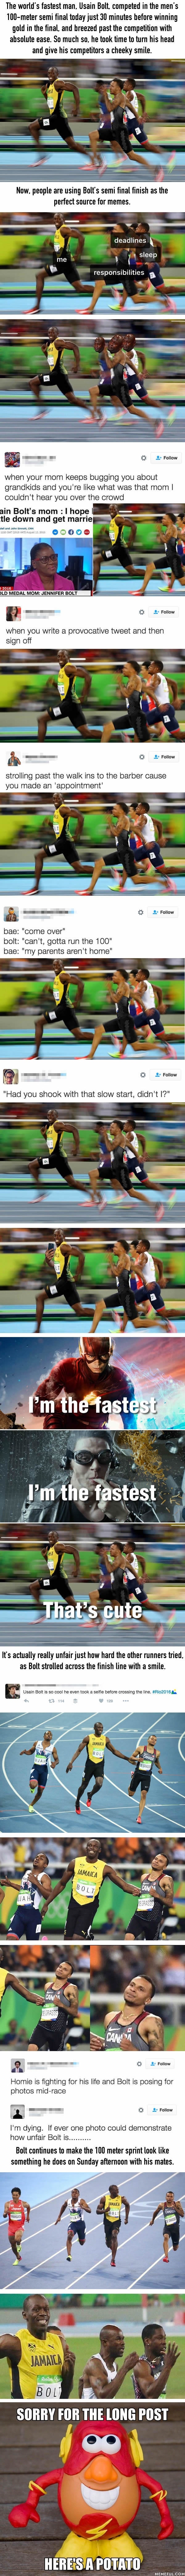 Usain Bolts dominance